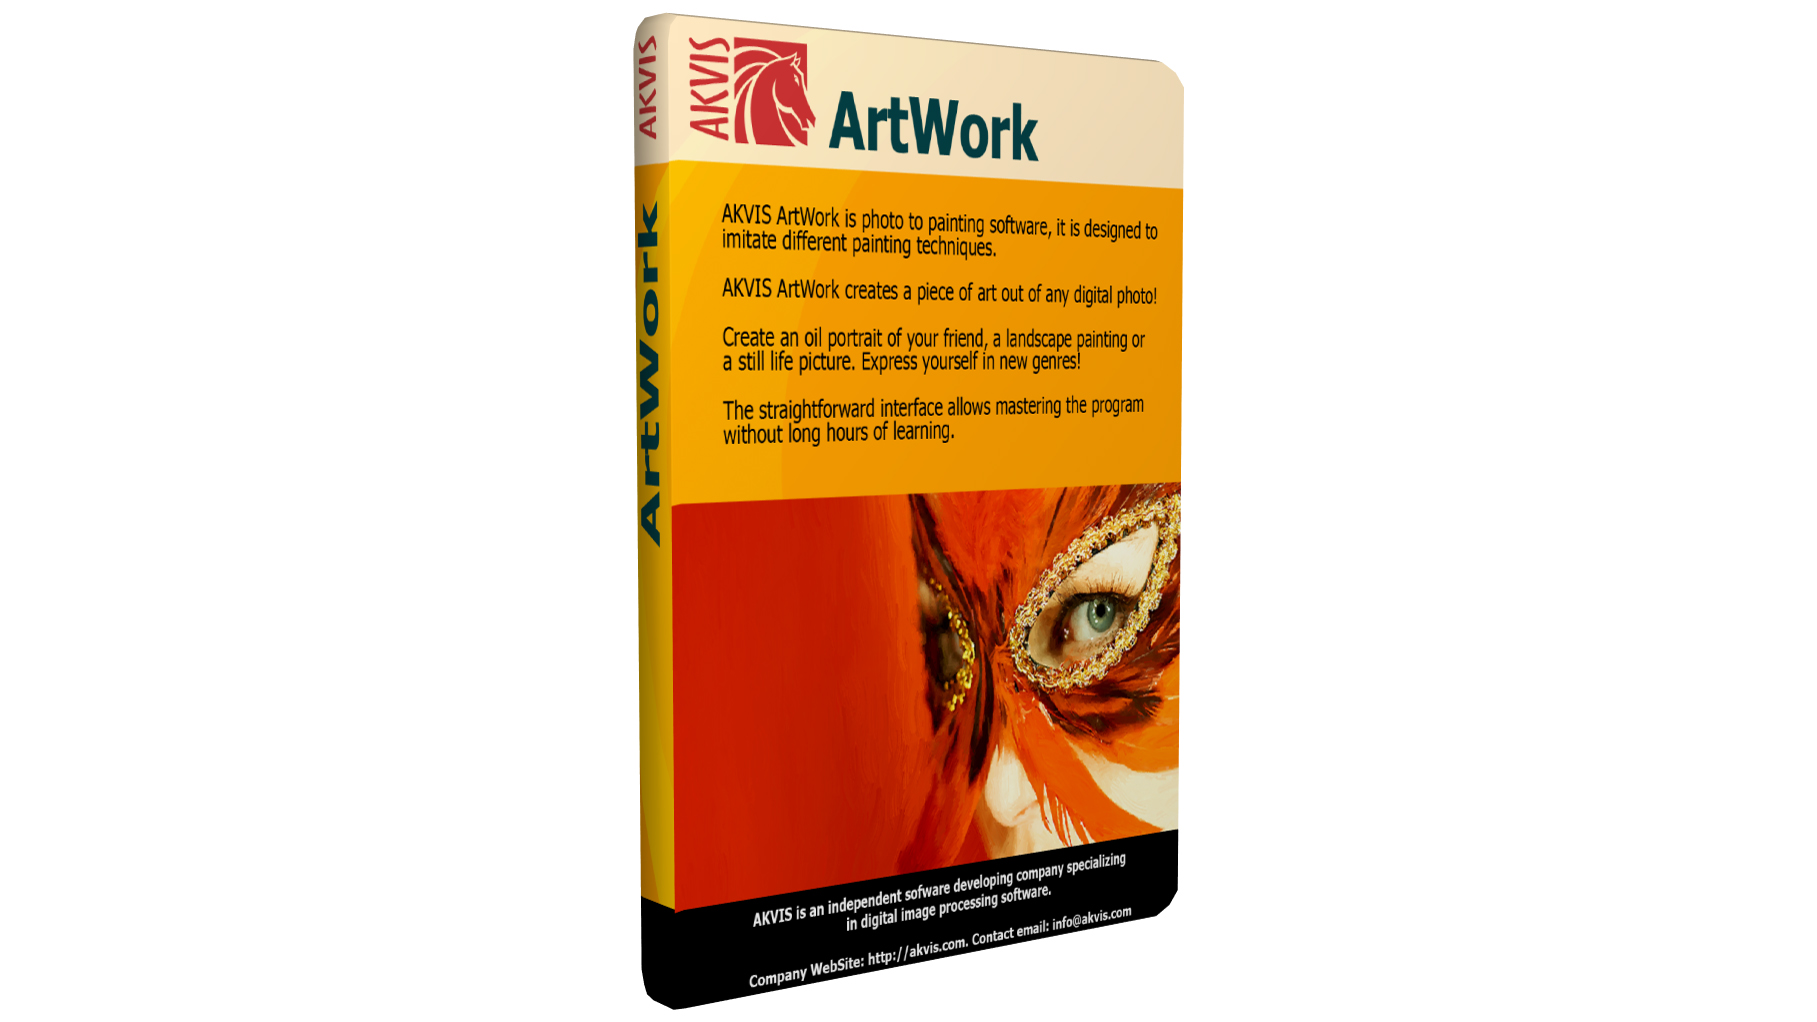 AKVIS ArtWork 9.1 download